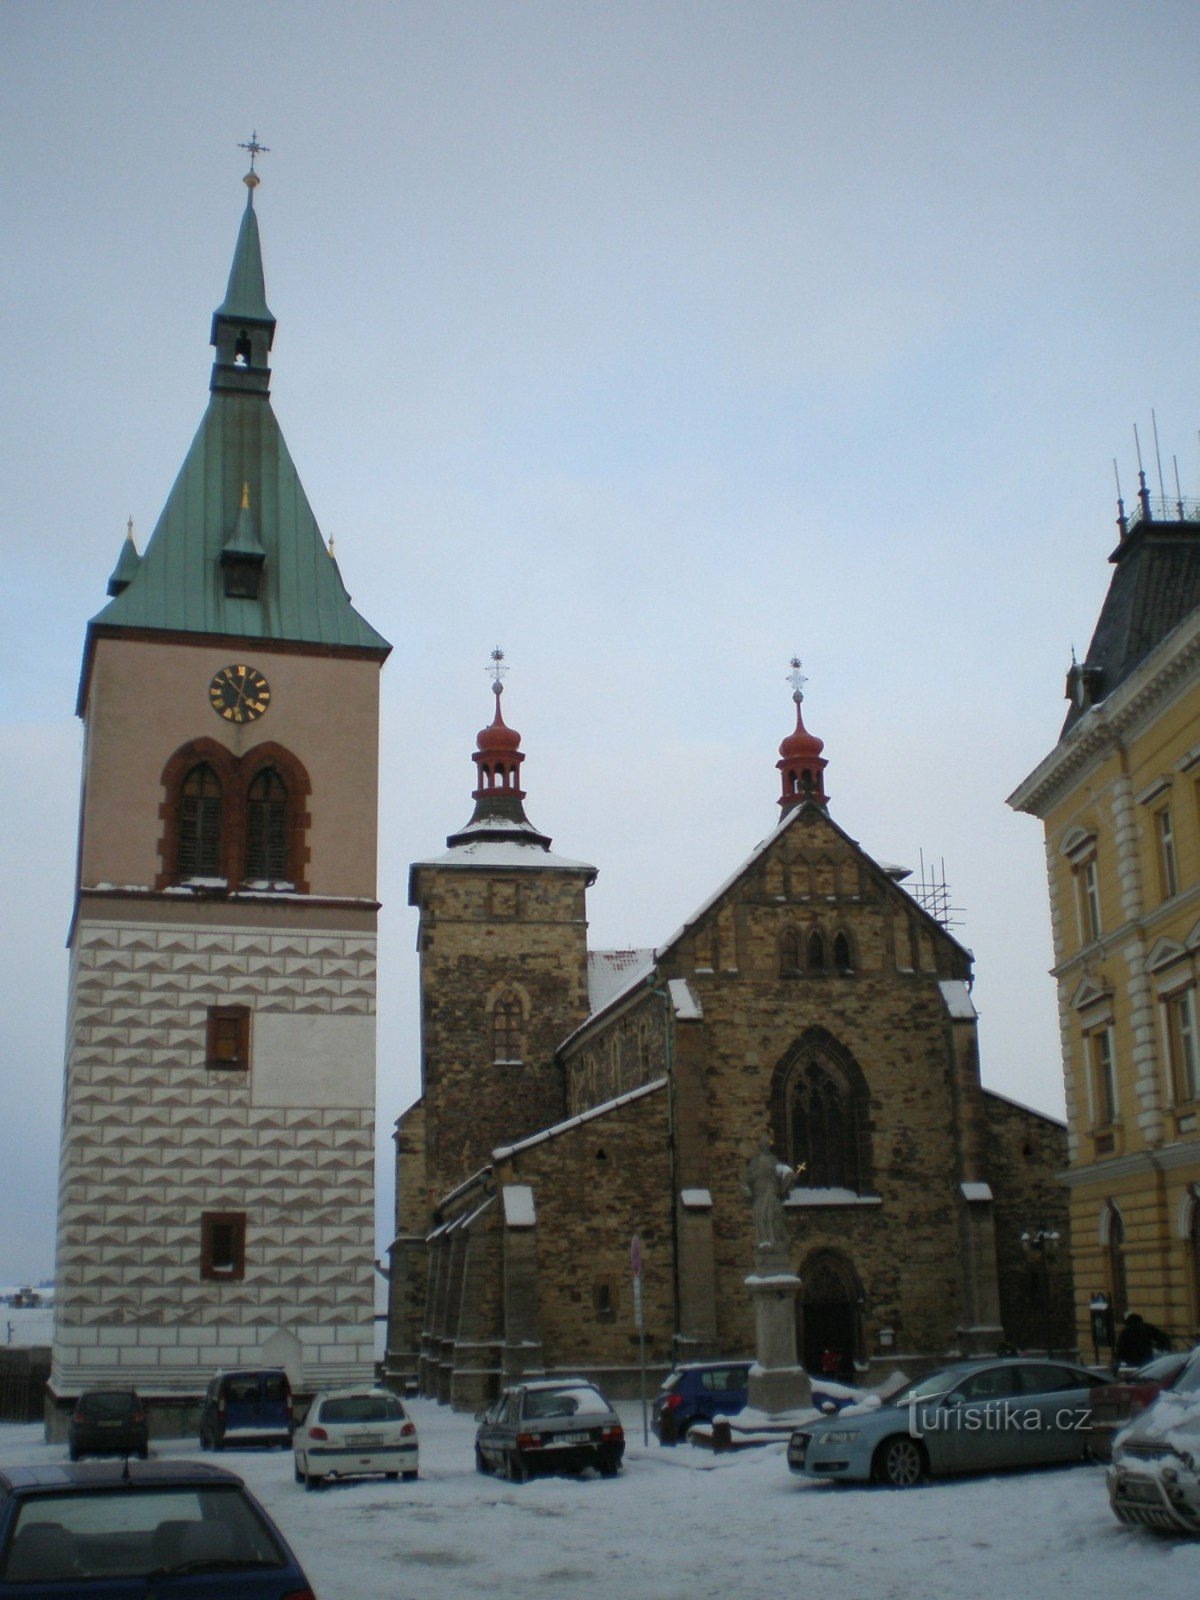 Курю - церква св. Стефана з дзвіницею